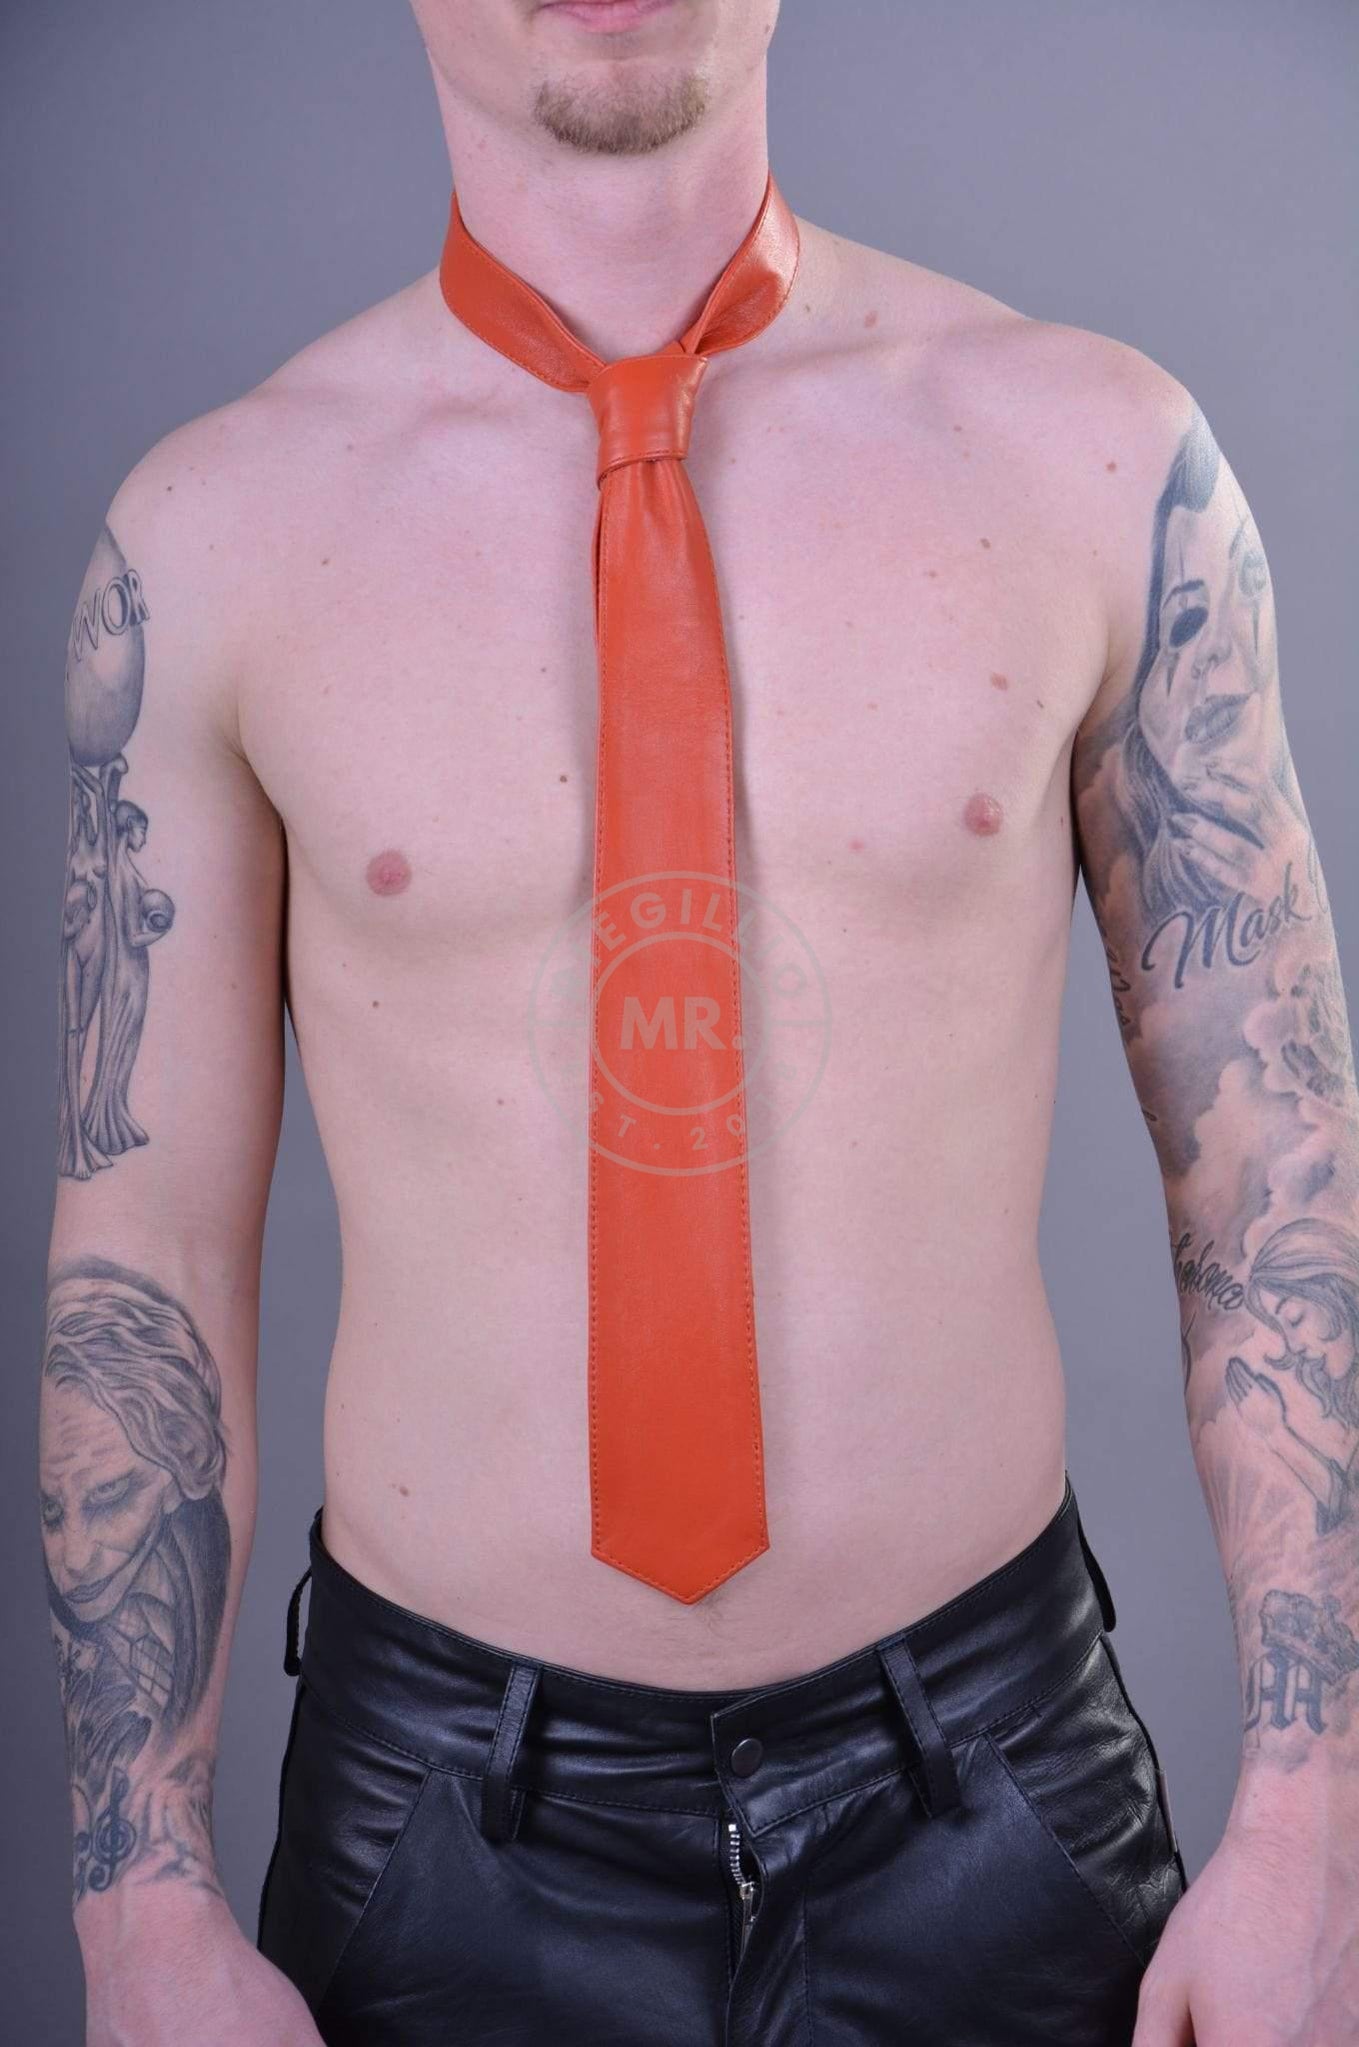 Orange Leather Tie at MR. Riegillio